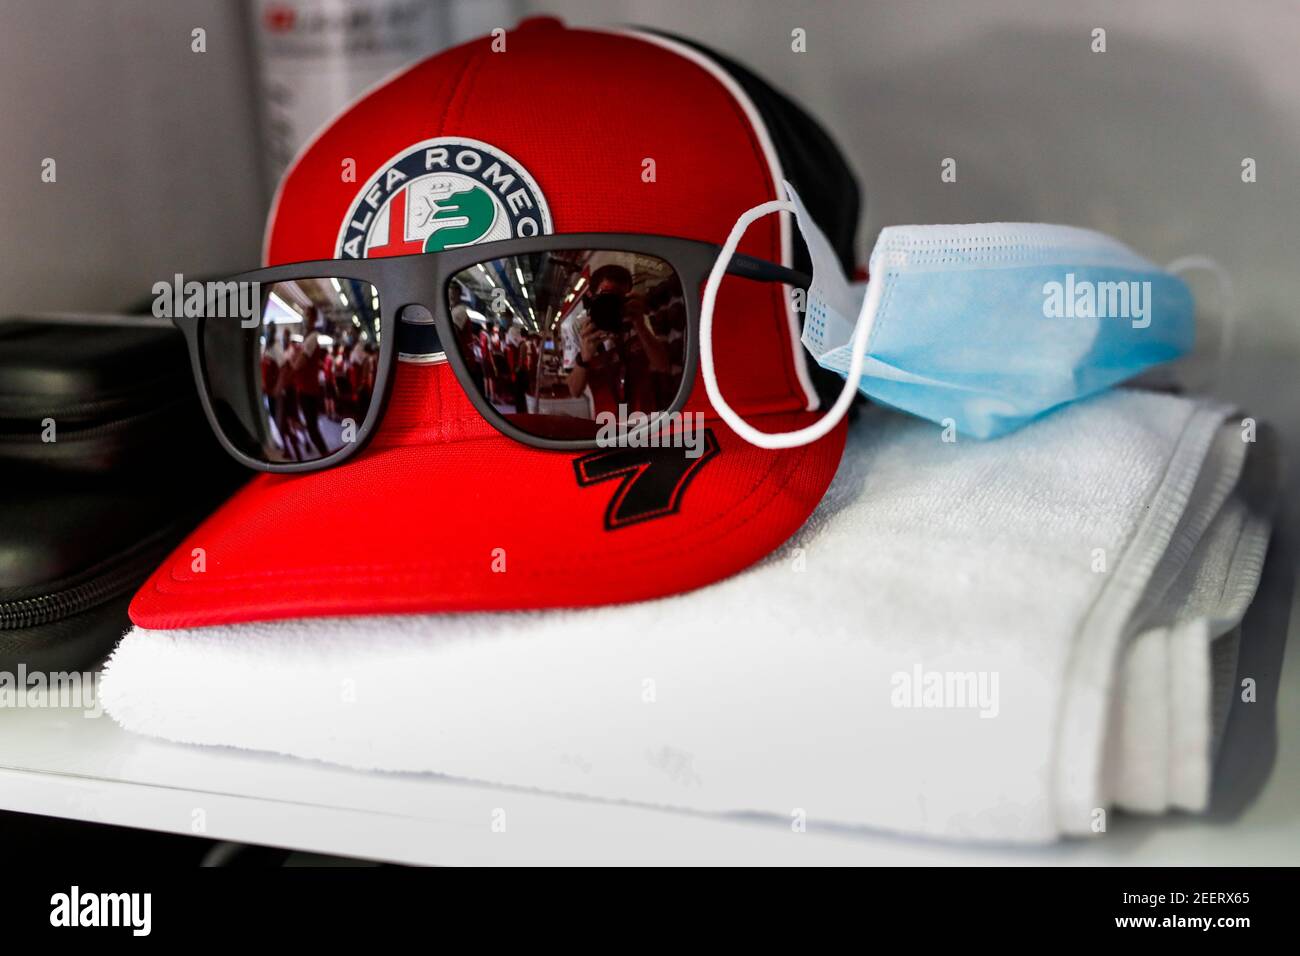 RAIKKONEN Kimi (fin), Alfa Romeo Racing ORLEN C39, maschera, cappello e  occhiali durante la Formula 1 Rolex Grosser Preis von Osterreich 2020, Gran  Premio d'Austria dal 02 al 05 luglio 2020 sul